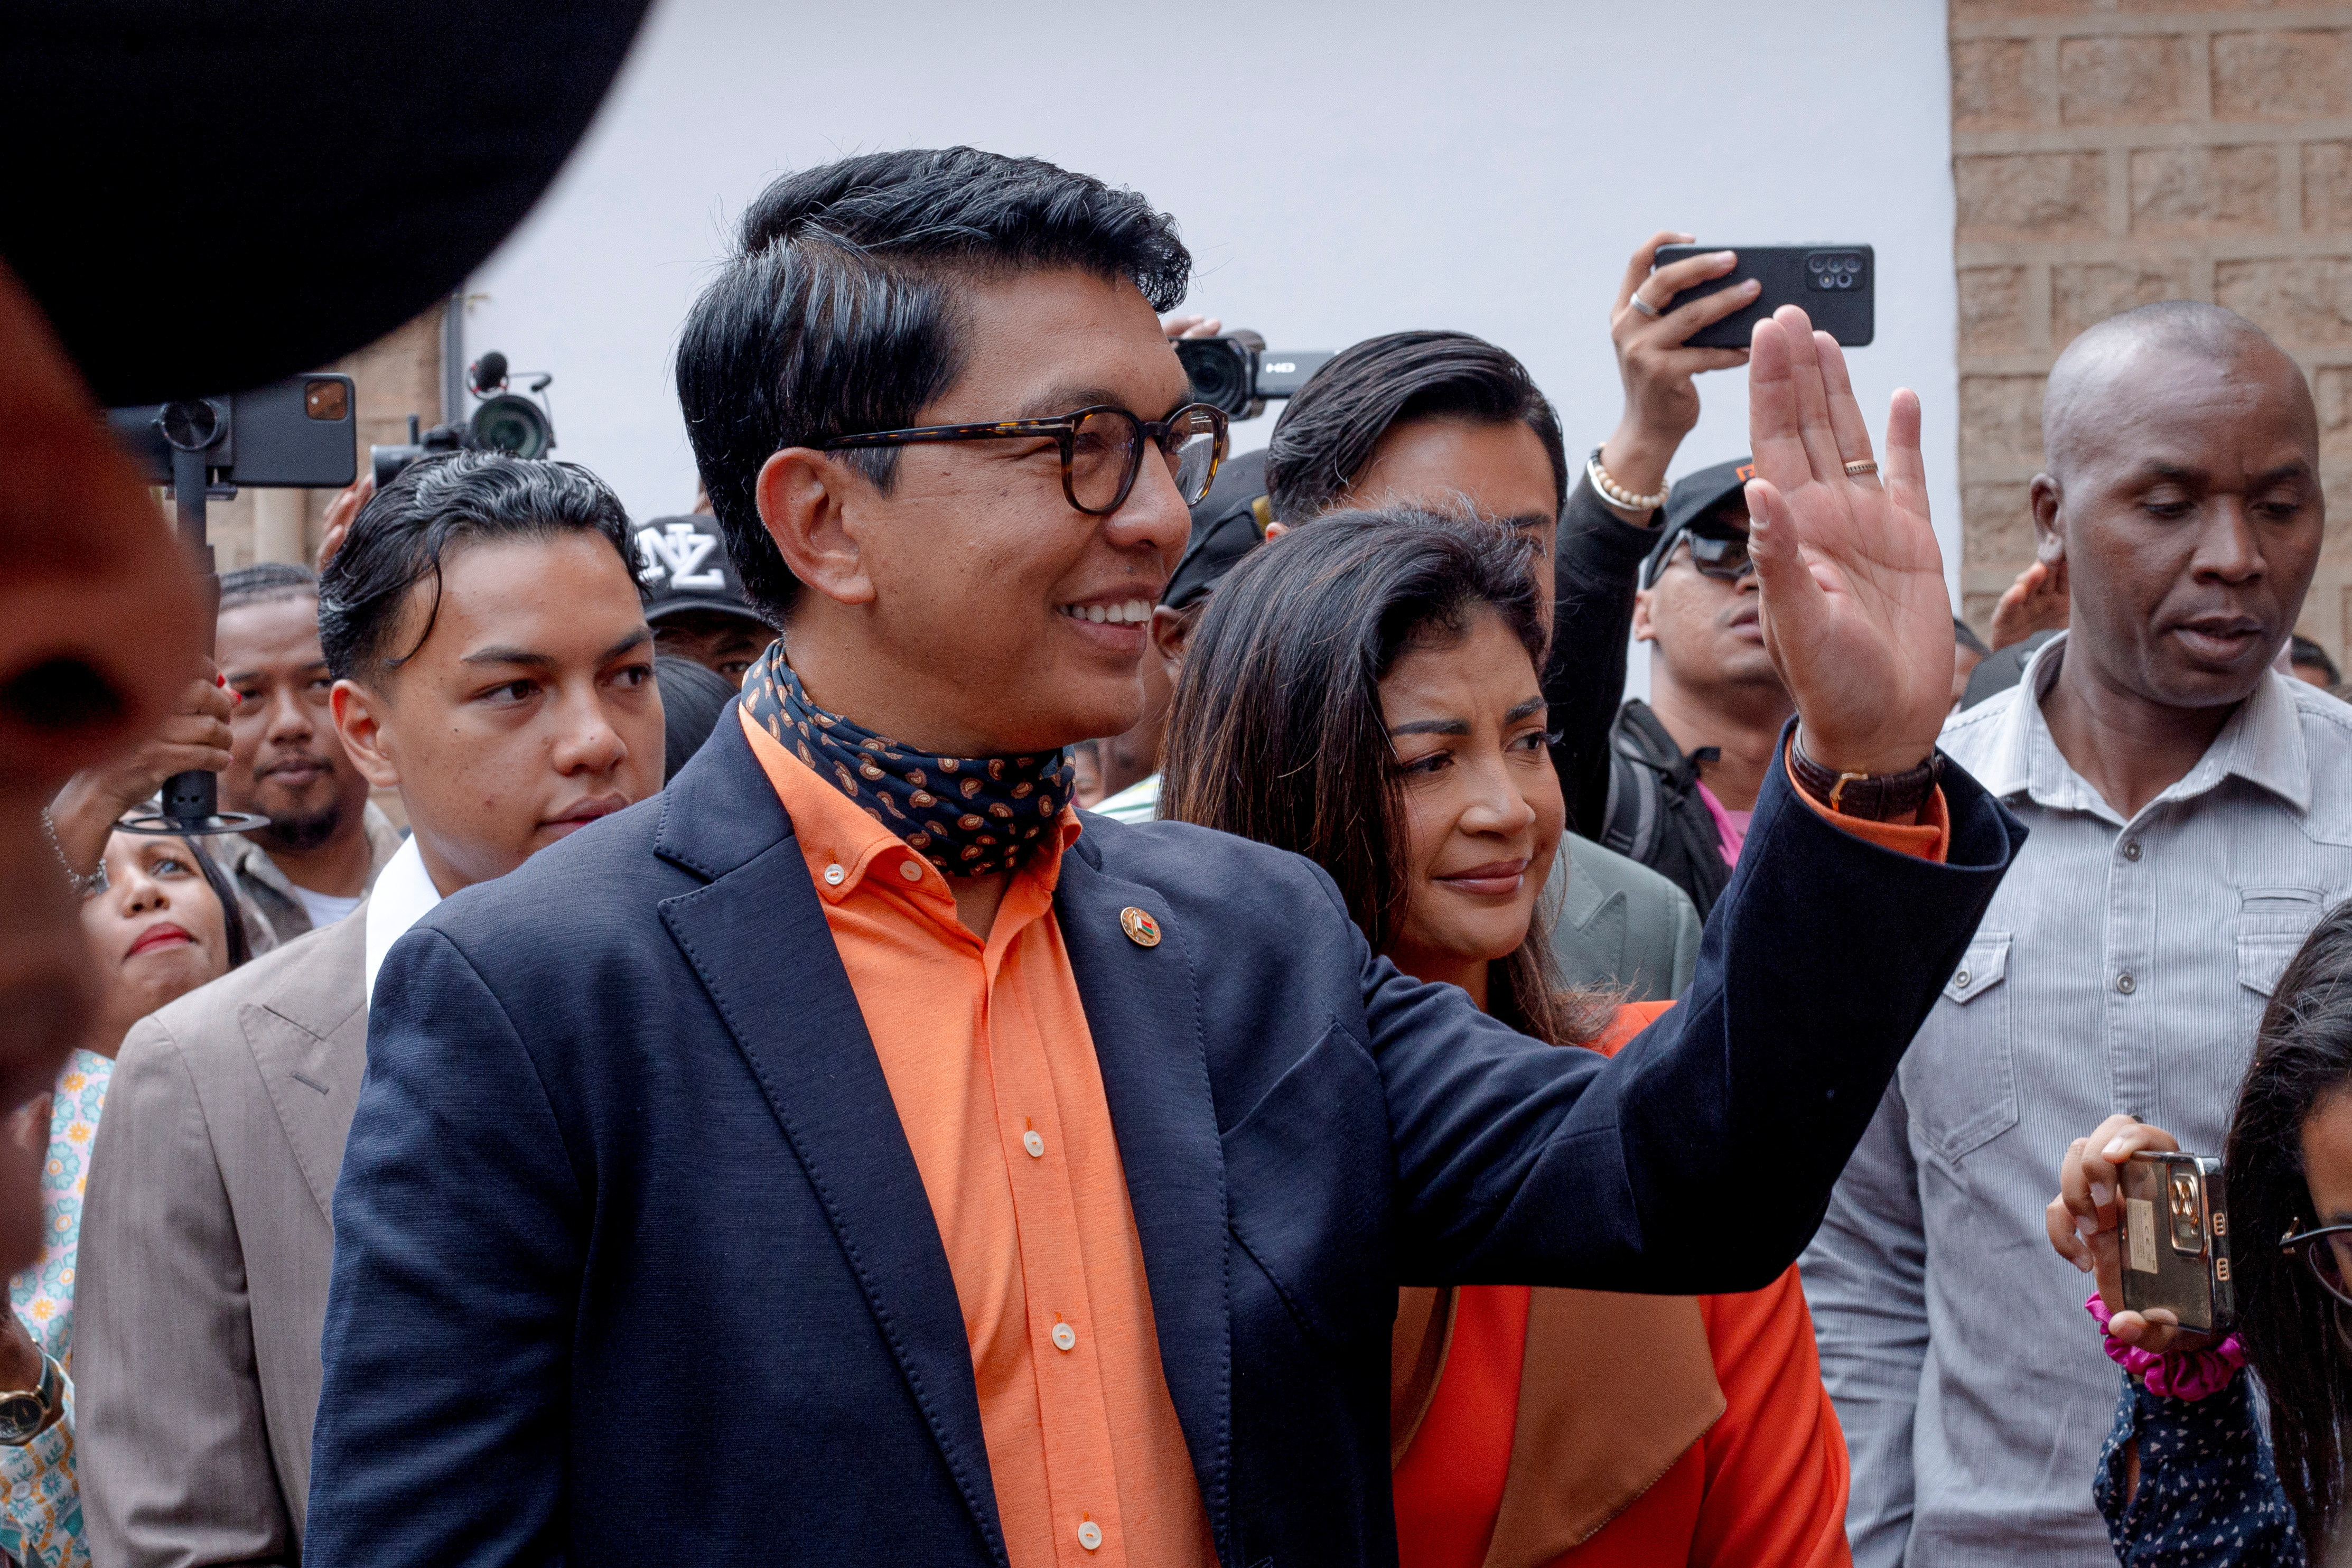 Prezydent Madagaskaru i kandydat na prezydenta Andry Rajoelina w towarzystwie swojej żony Mialy Rajoeliny, gdy przybywa on, aby oddać głos w lokalu wyborczym podczas wyborów prezydenckich w Ambatobe